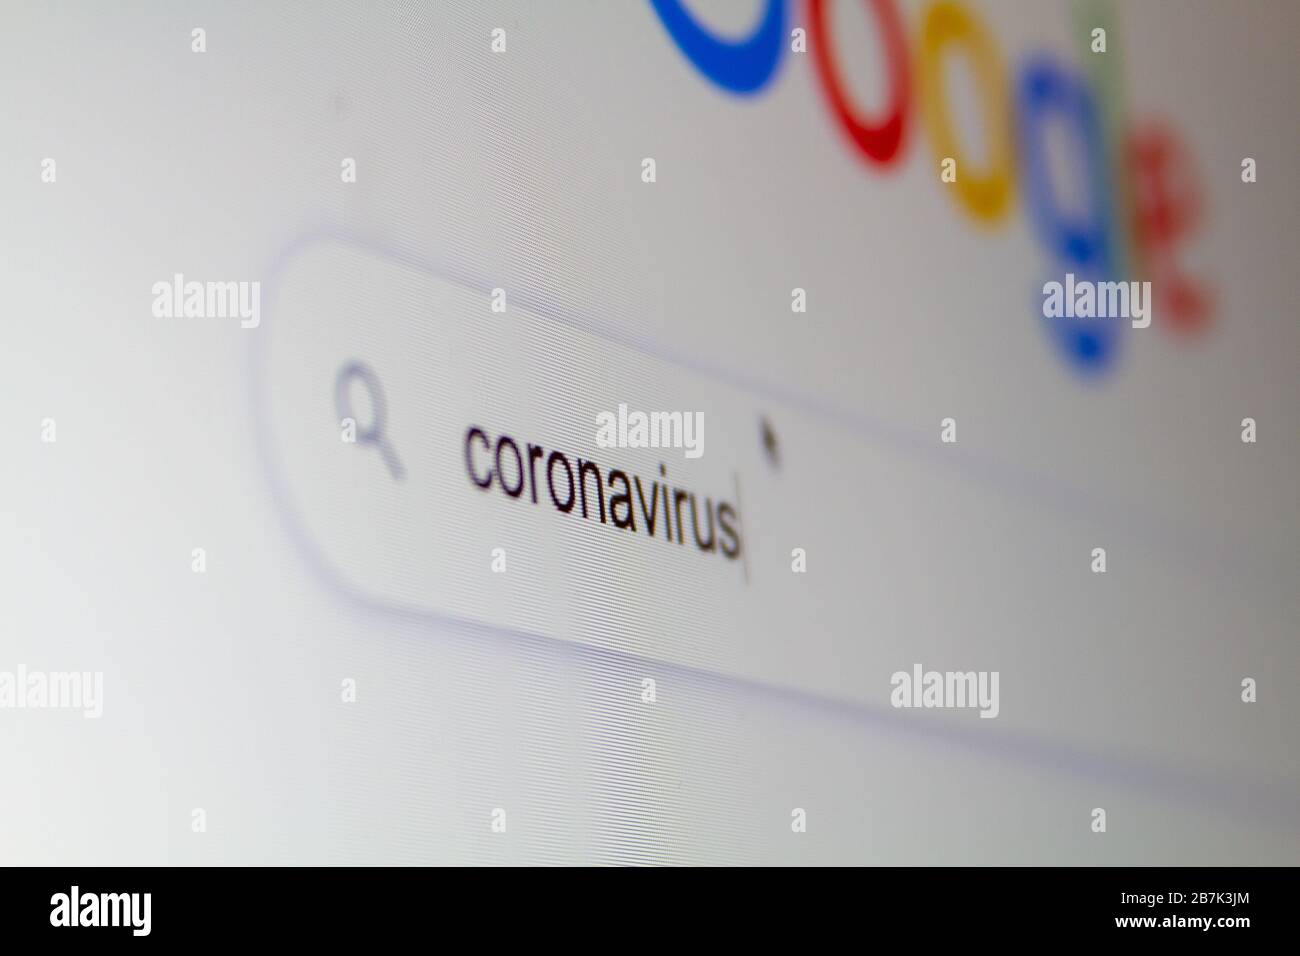 Recherchez "coronavirus" dans un moteur de recherche Internet sur un ordinateur. Banque D'Images